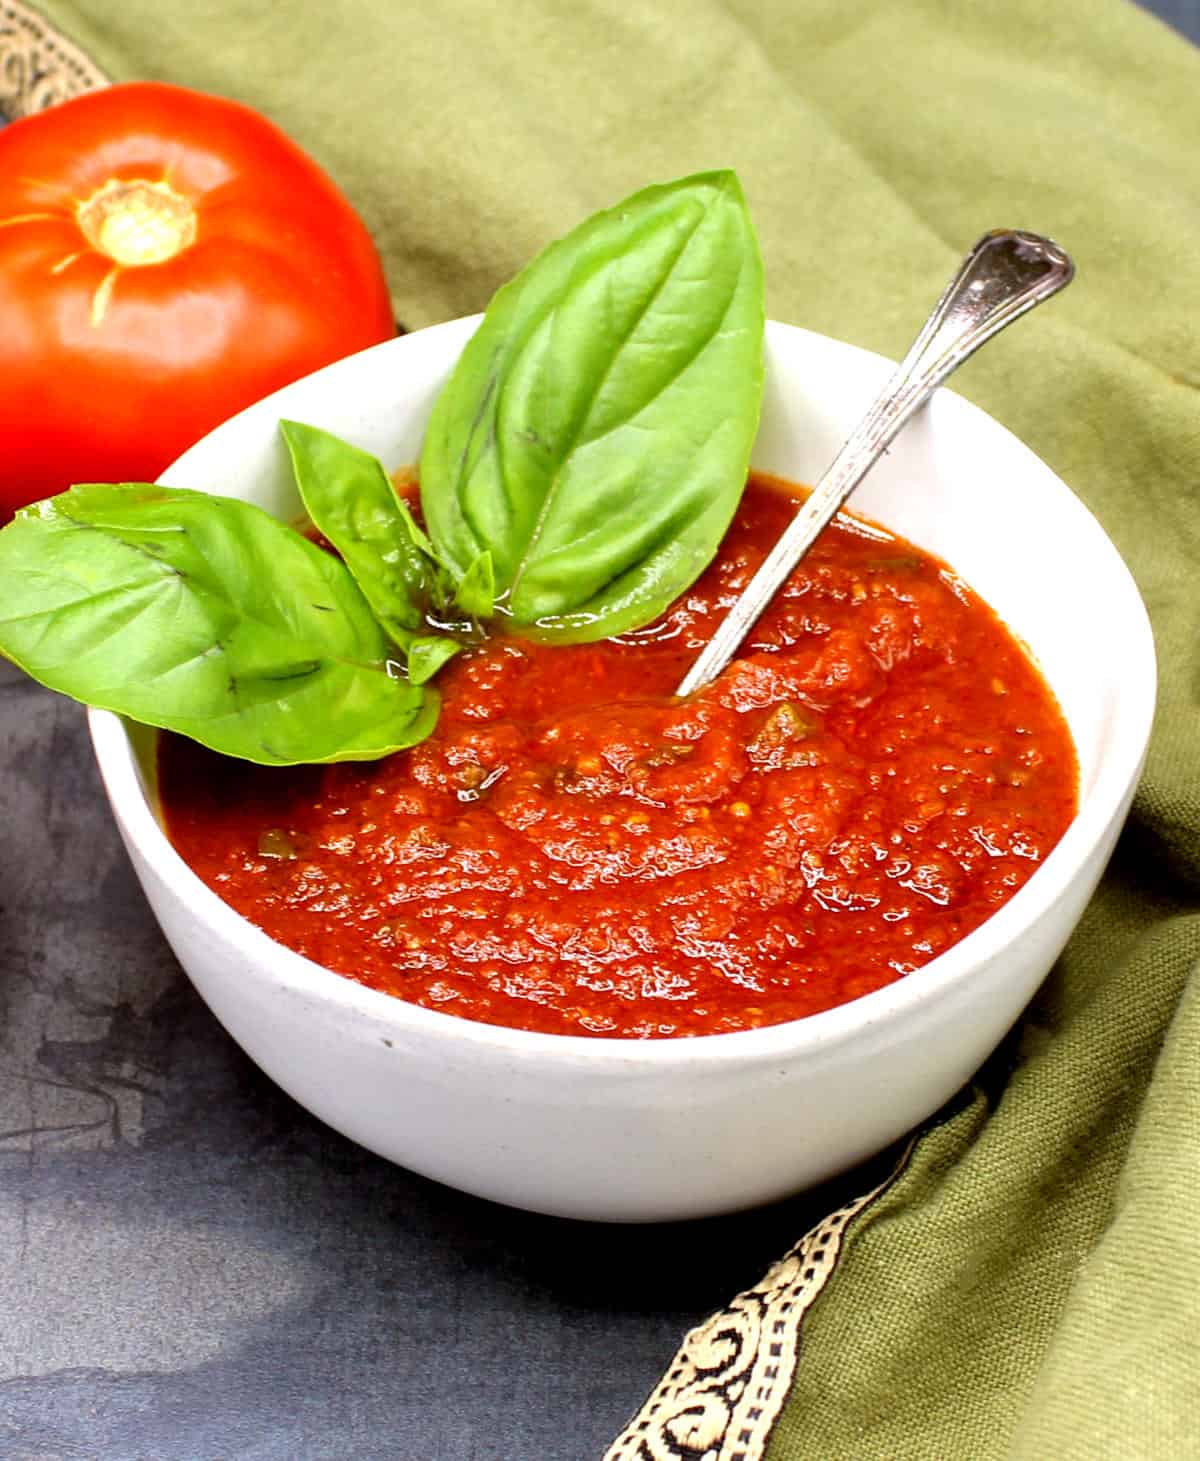 Domowy sos pomidorowy w białej misce z liśćmi bazylii.  W tle pomidor i zielona serwetka.